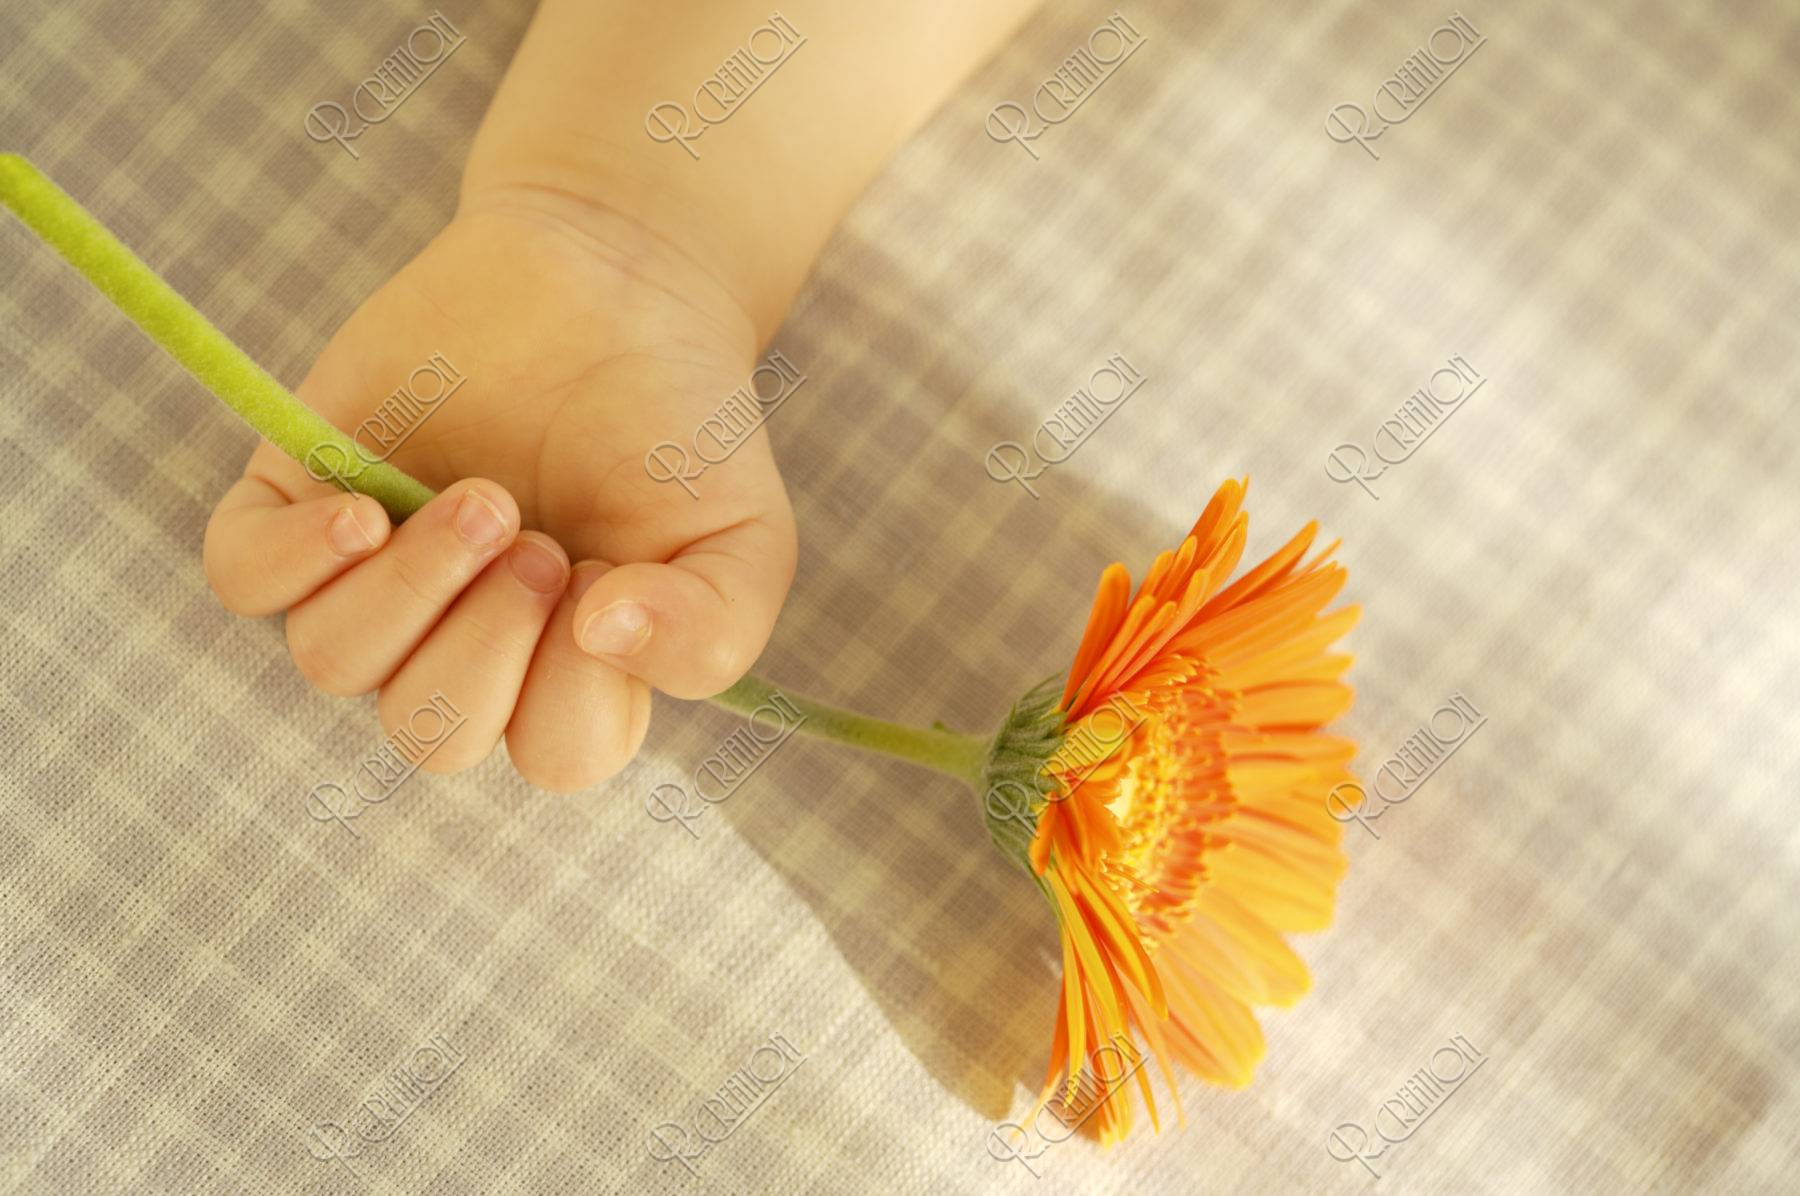 オレンジの花を持つ赤ちゃんの手